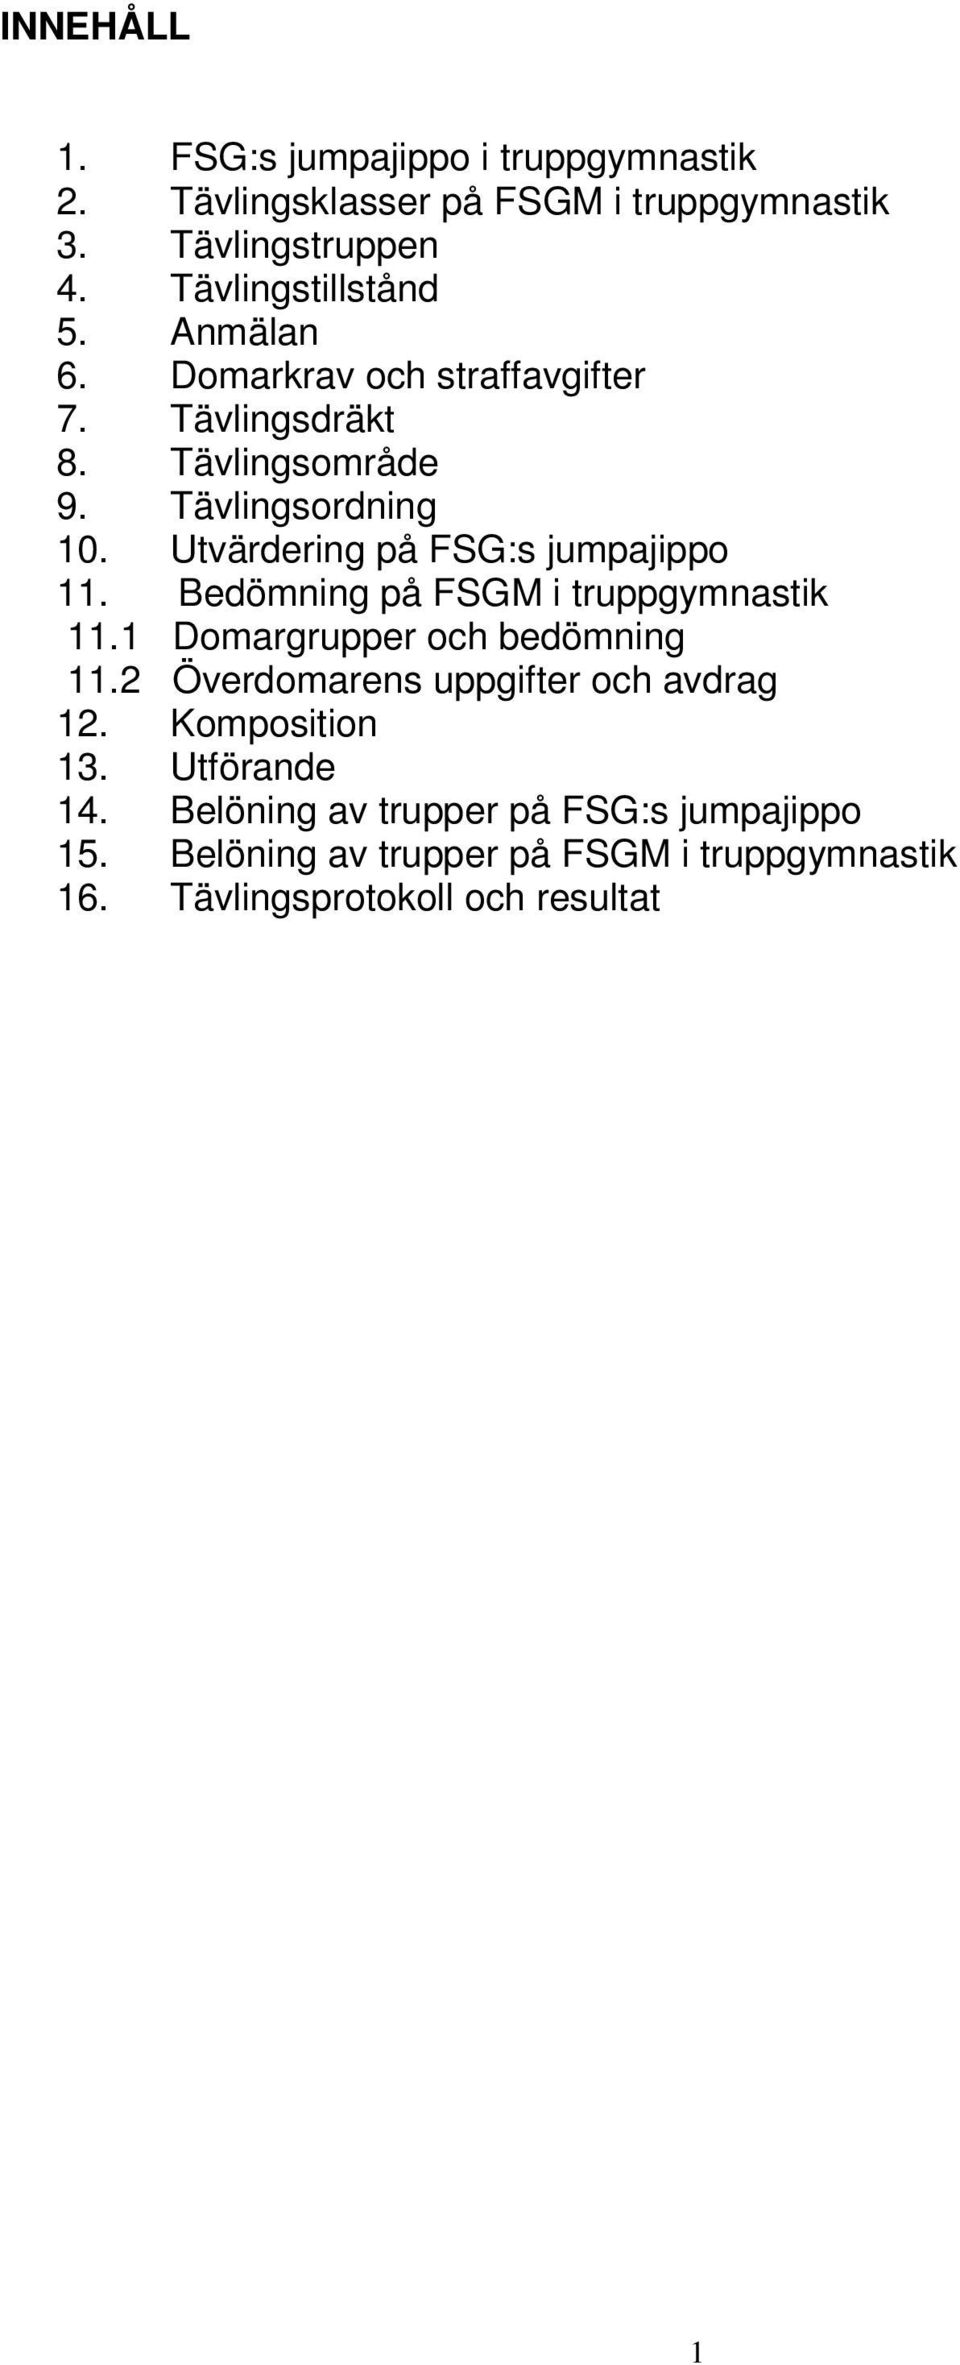 Bedömning på FSGM i truppgymnastik 11.1 Domargrupper och bedömning 11.2 Överdomarens uppgifter och avdrag 12. Komposition 13.